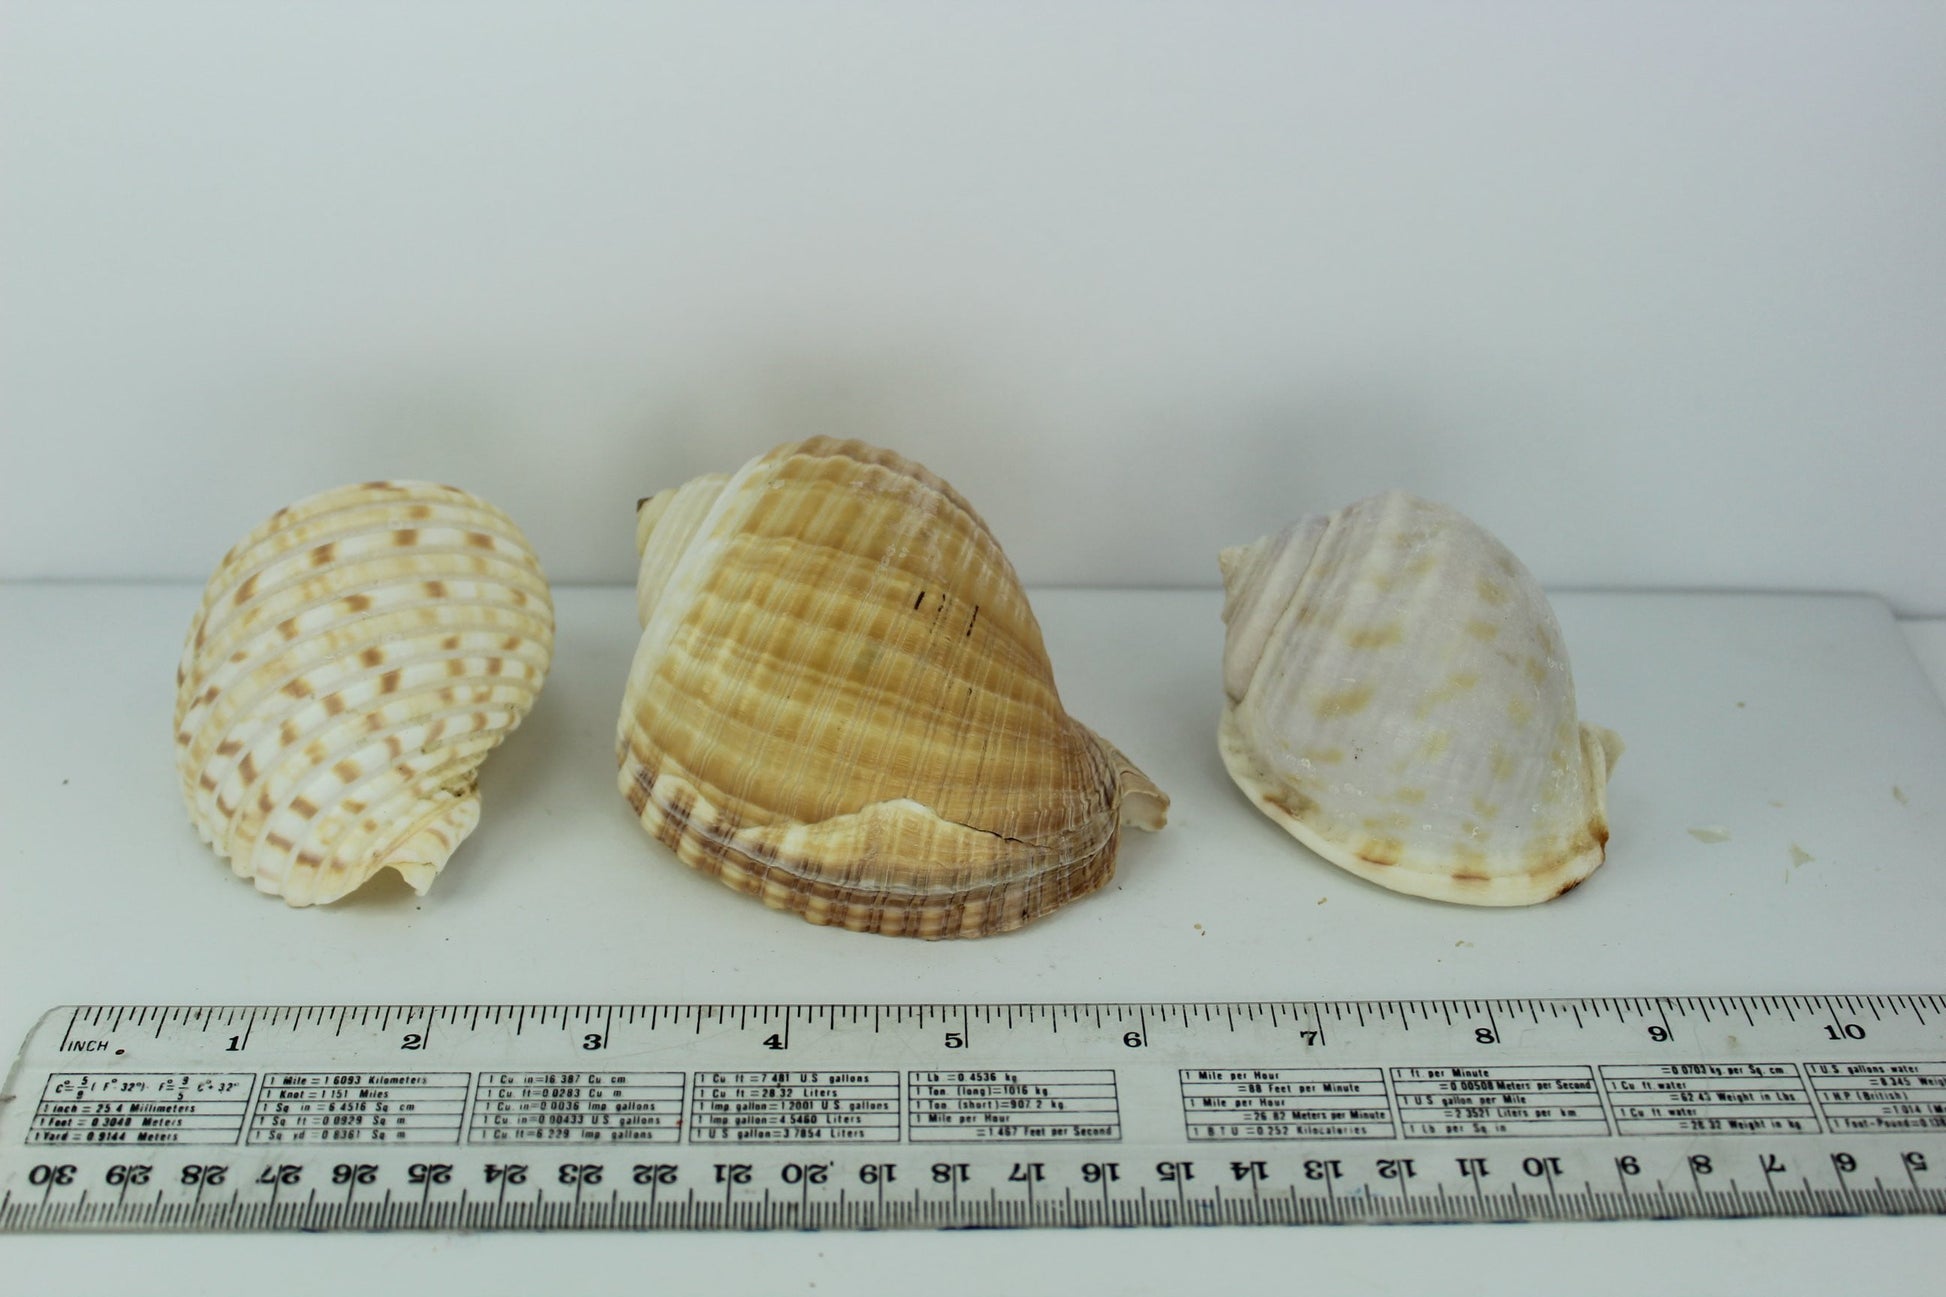 Seashells - Three Florida Shells - Two (2) Tuns & One (1) Bonnet